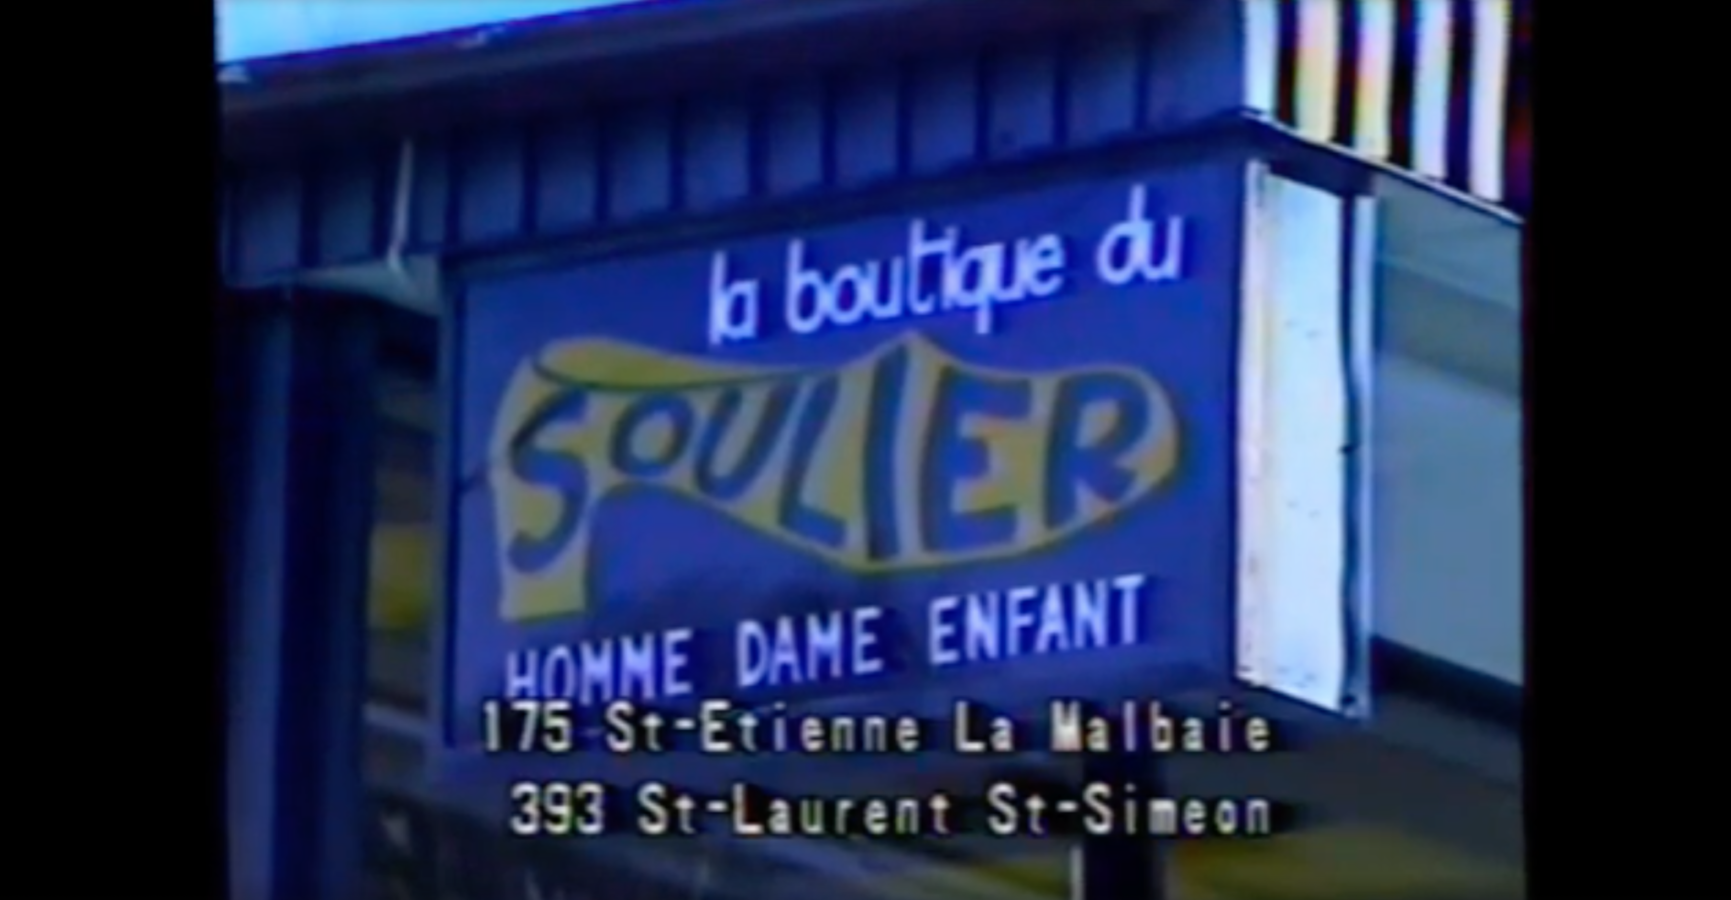 Souvenir de l'annonce du temps des fêtes de la Boutique du Soulier à La Malbaie (Par Gaétan Long)